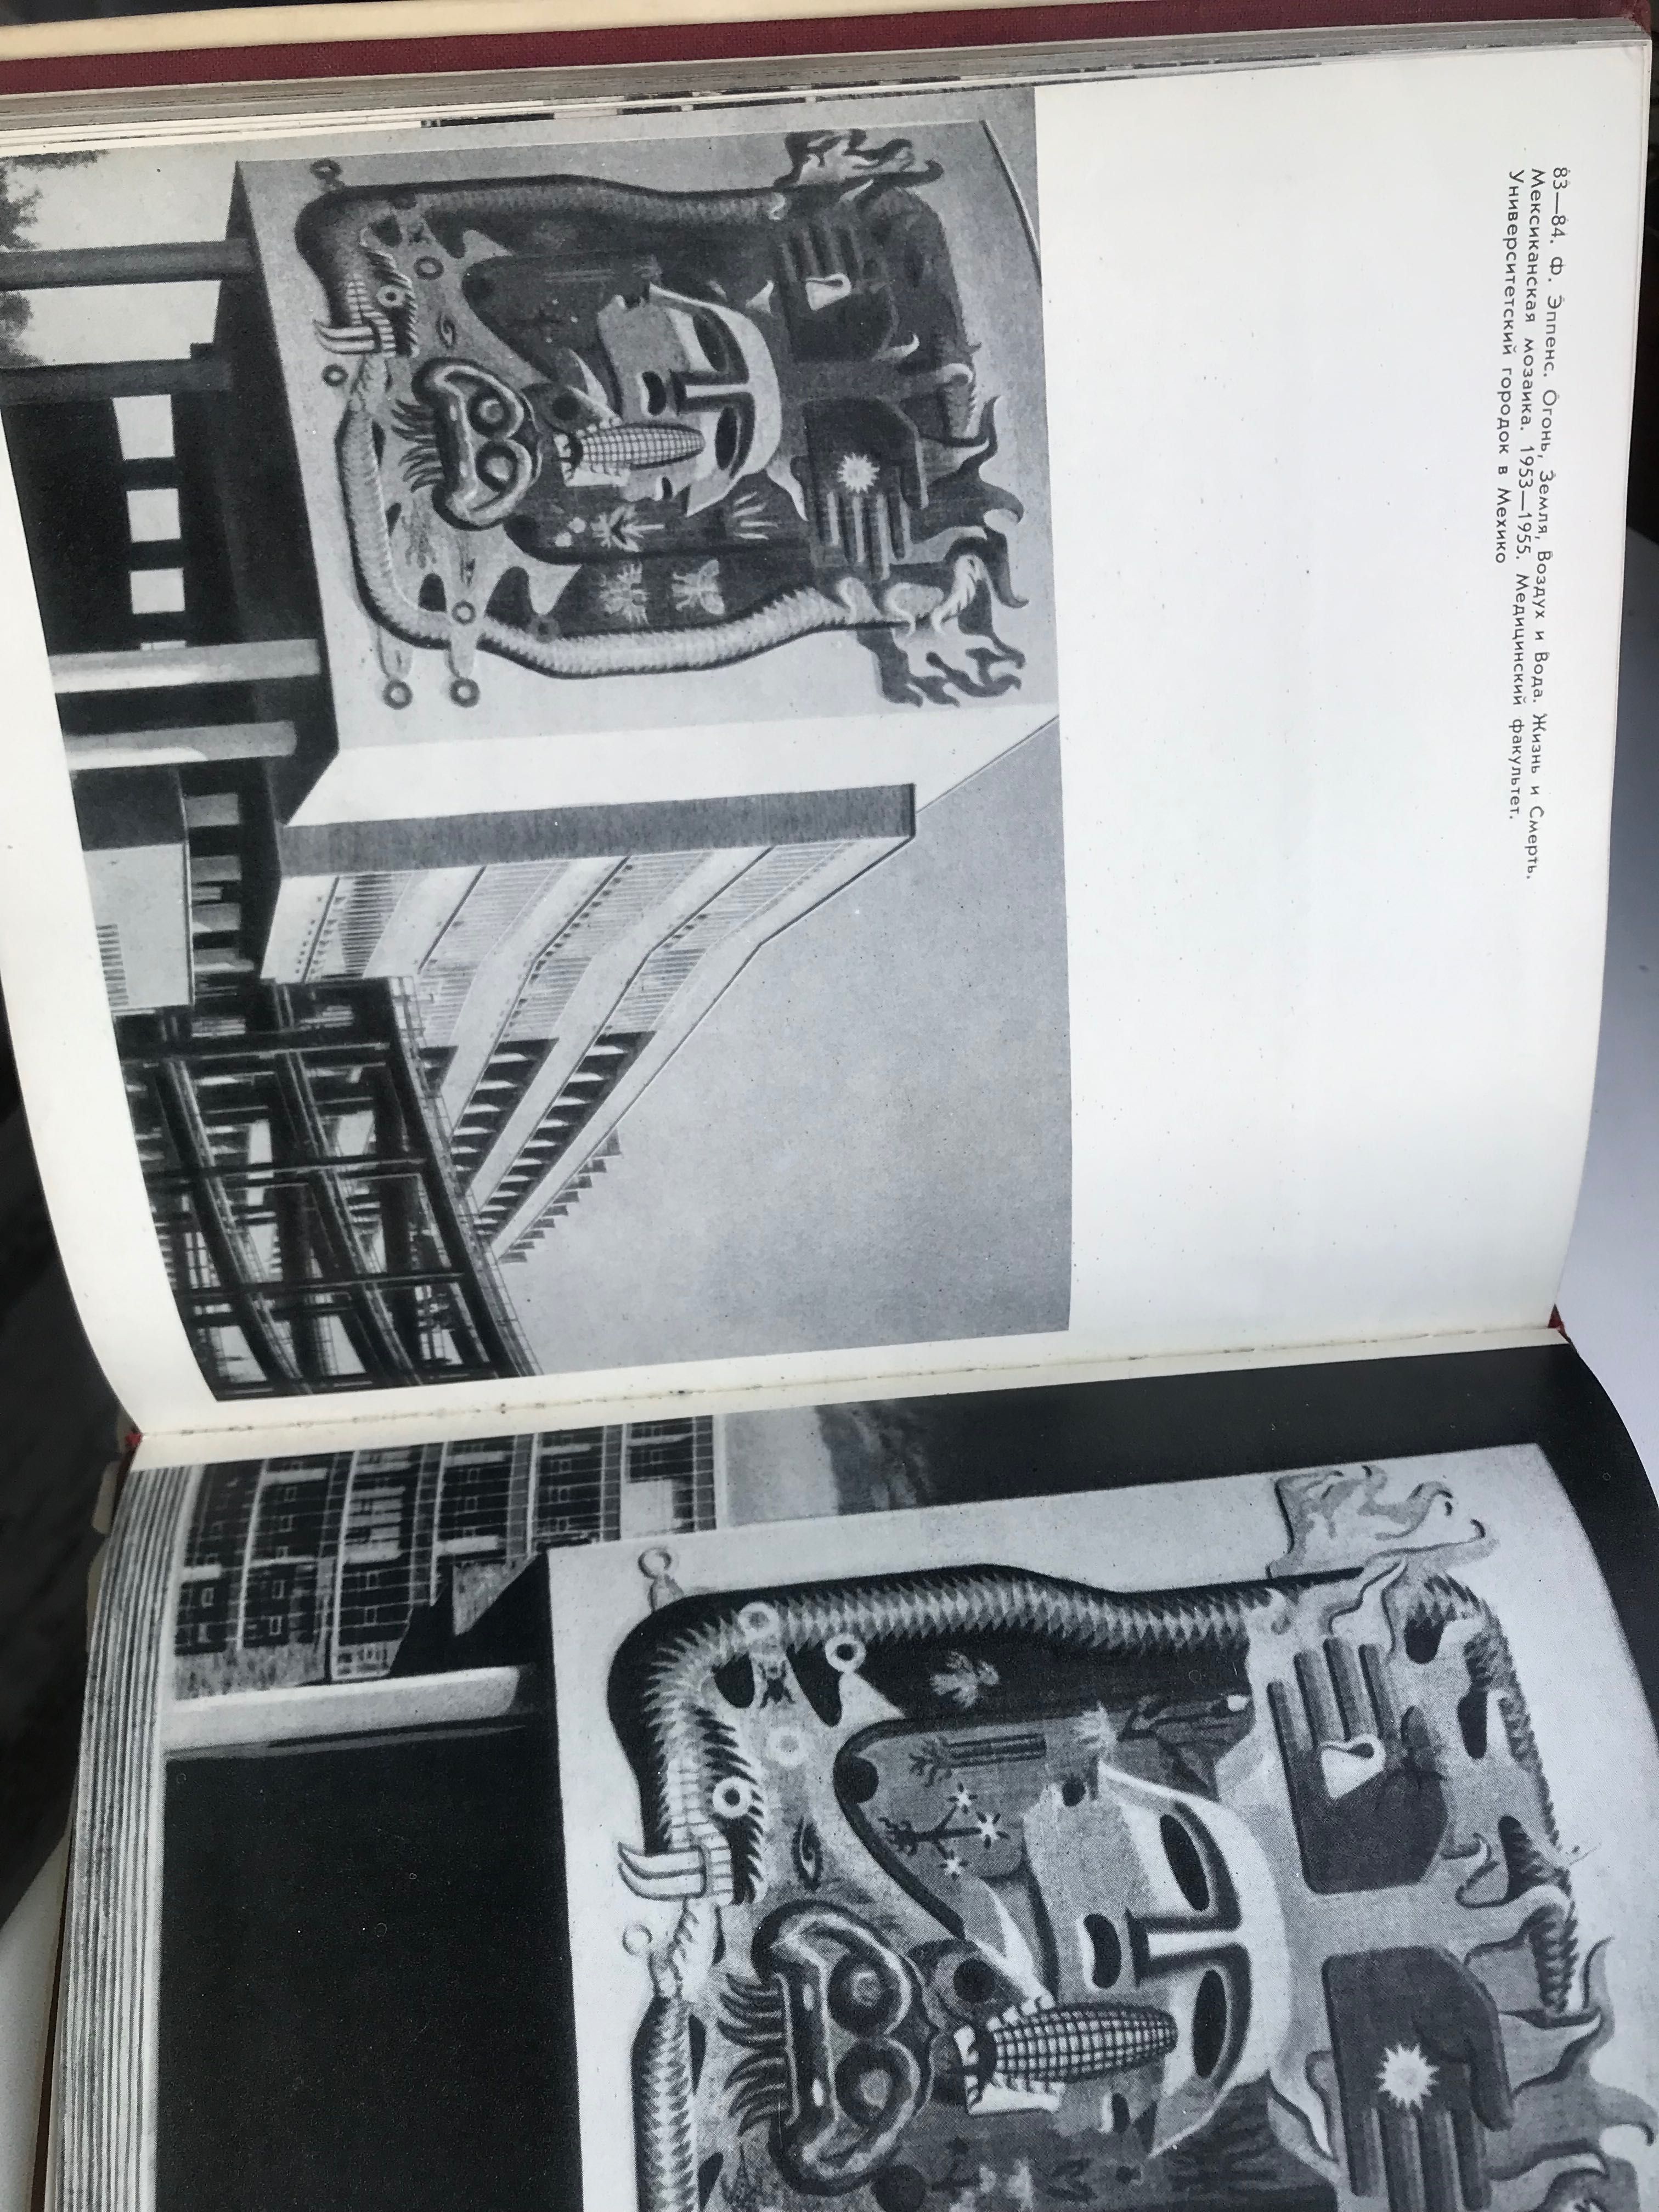 Книга «Монументальная живопись Мексики», Л.Жадова 1965 г